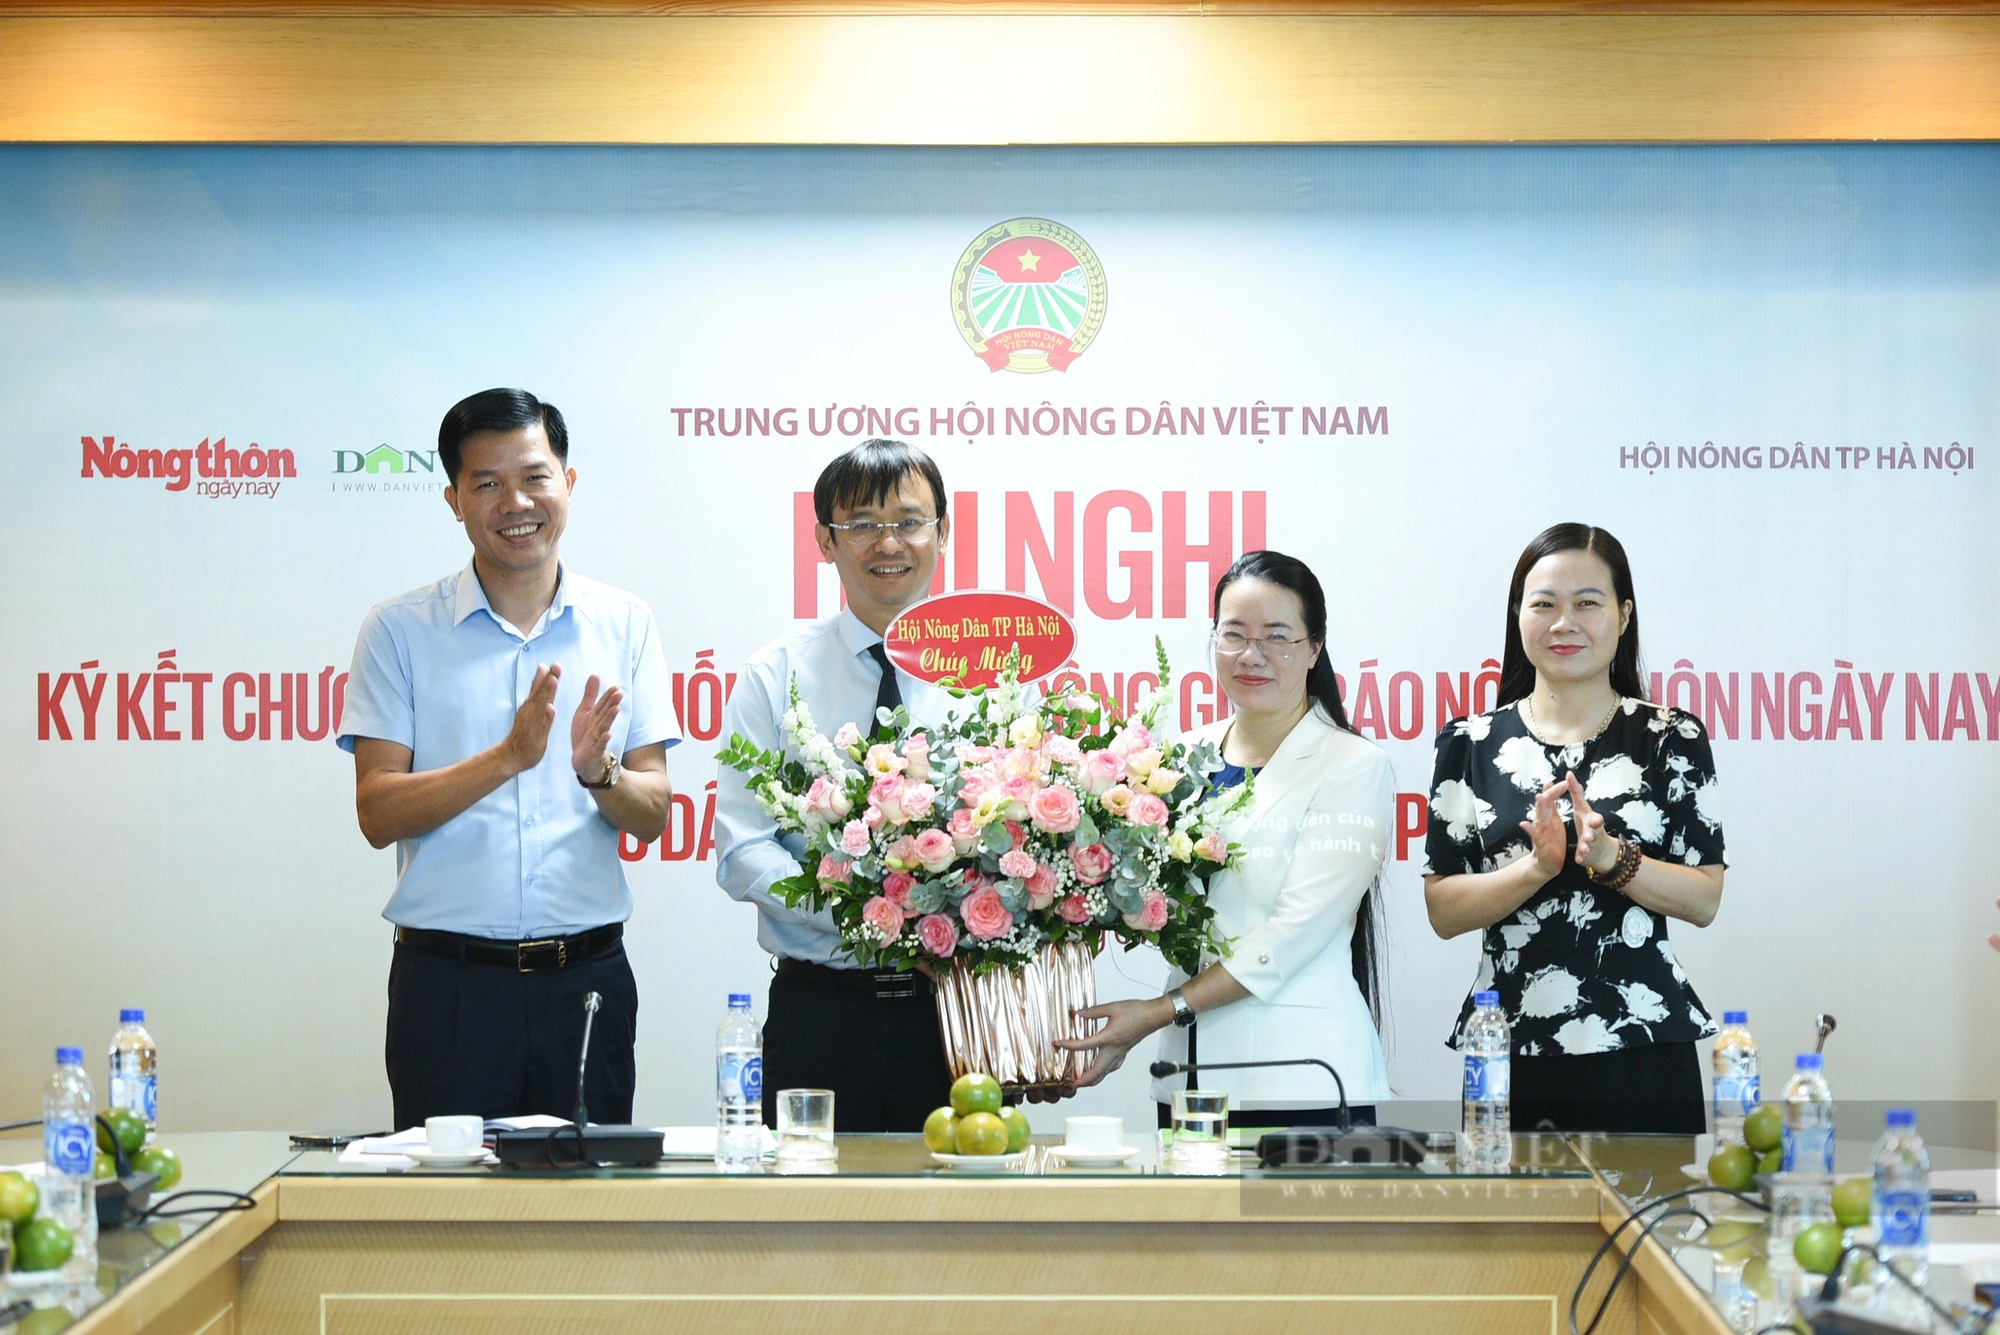 Hình ảnh Báo NTNN/điện tử Dân Việt ký kết chương trình phối hợp hoạt động với Hội Nông dân thành phố Hà Nội- Ảnh 6.